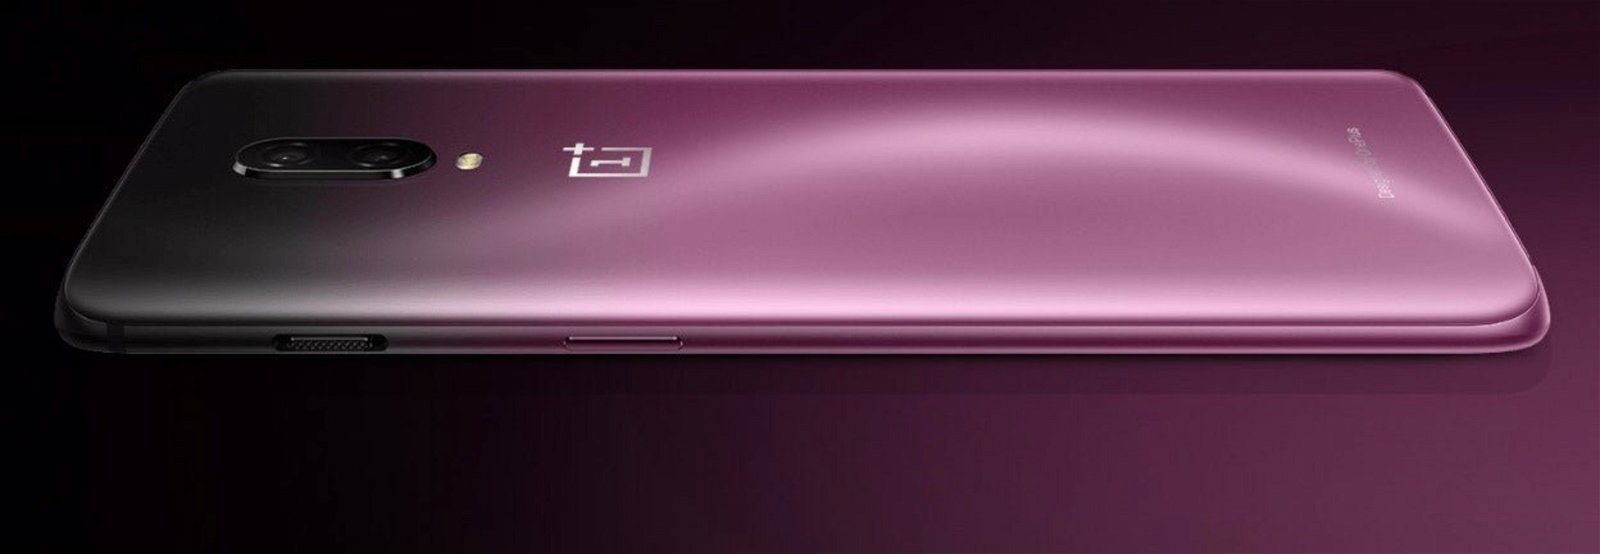 El OnePlus 6T hace oficial su versión en color púrpura